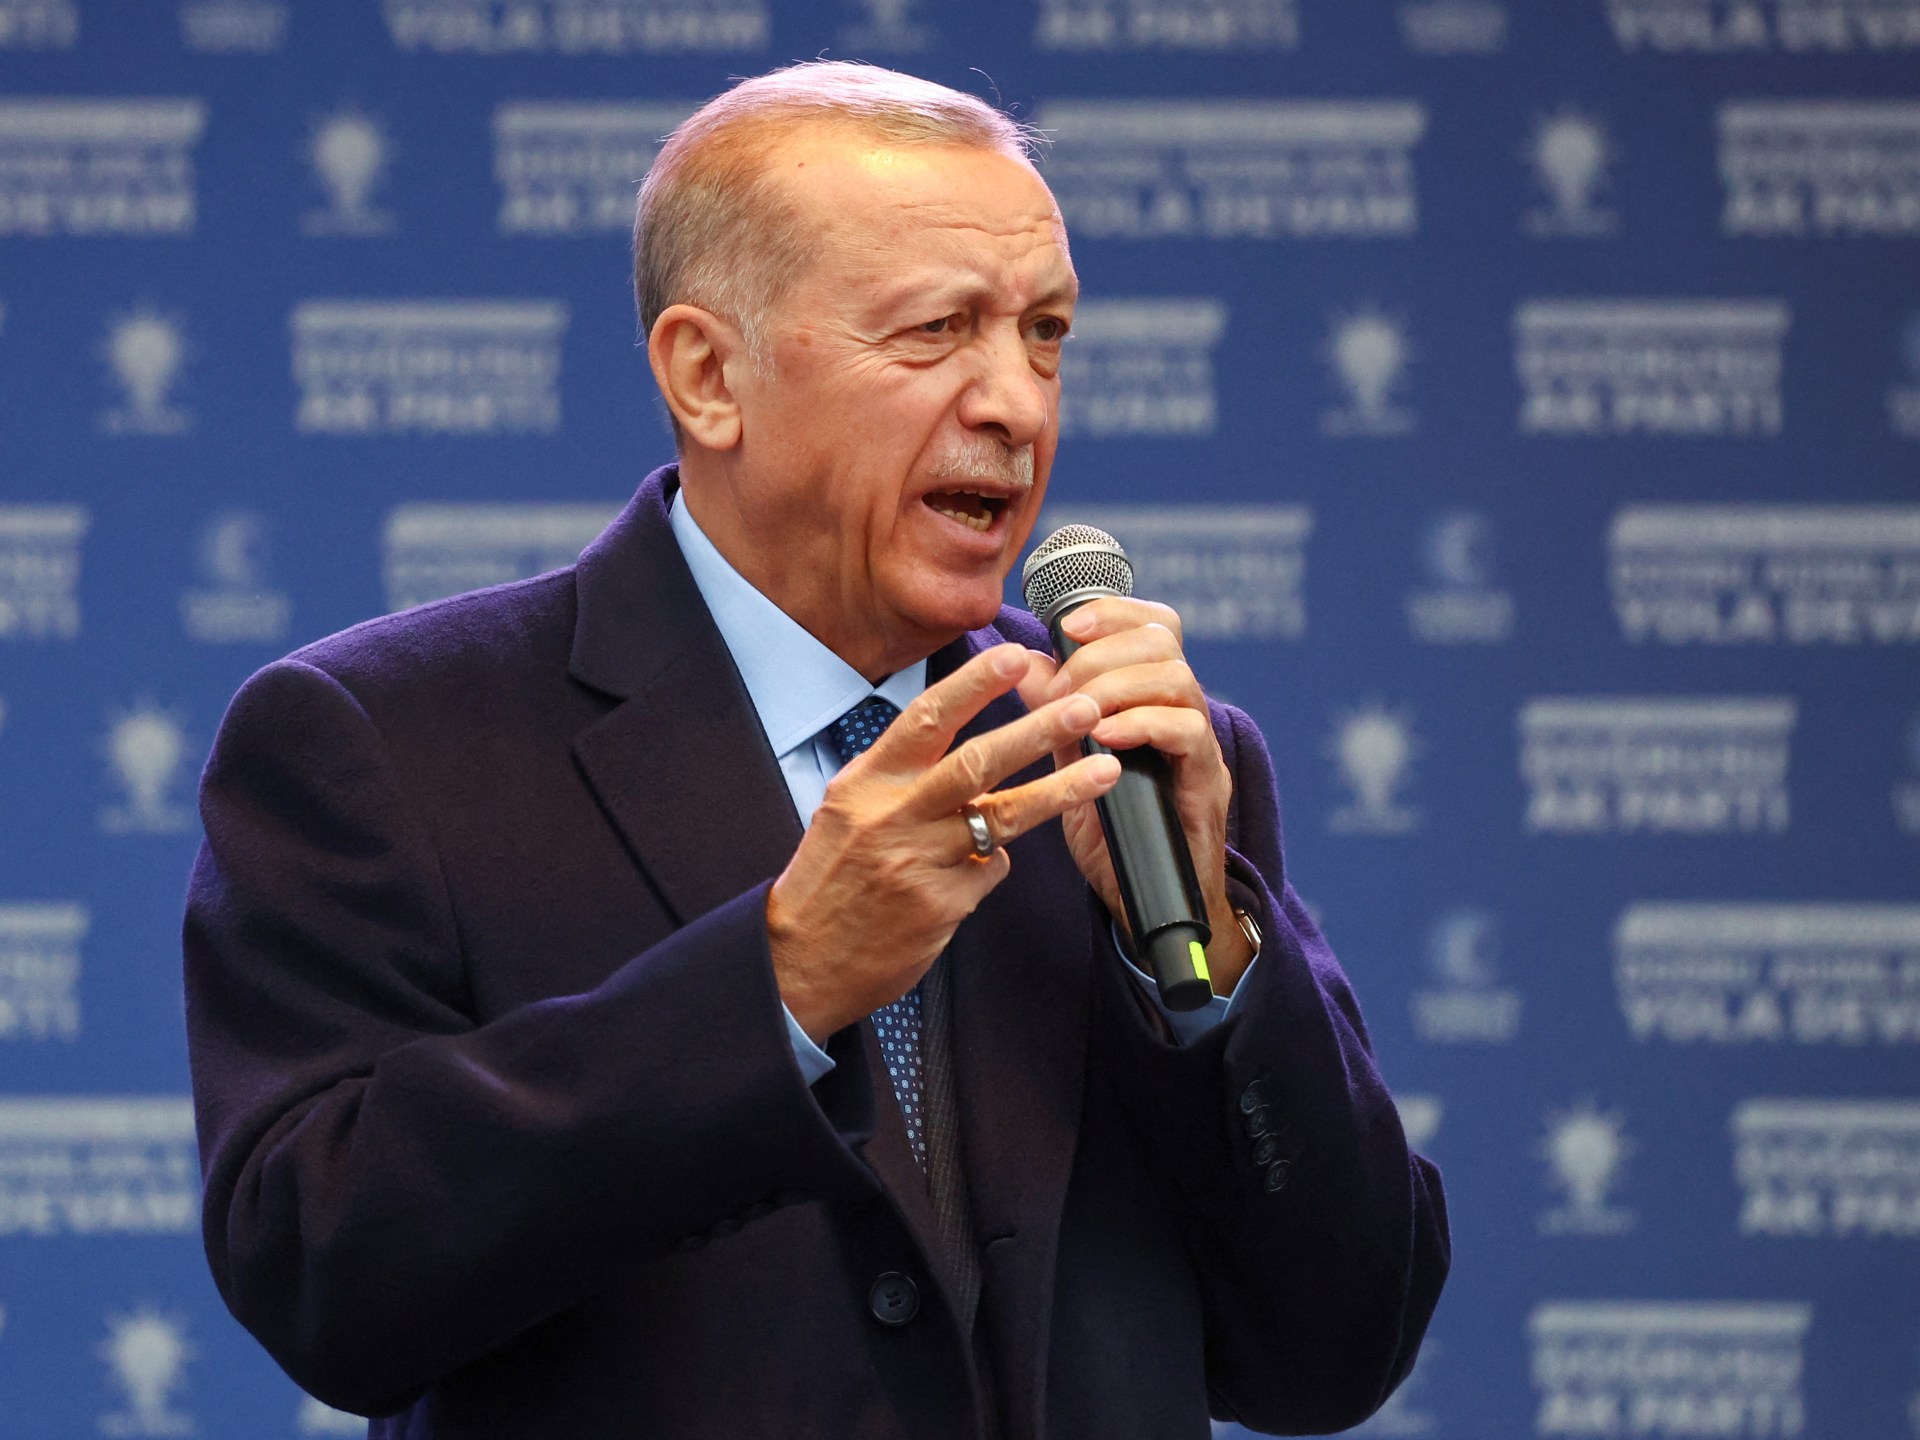 Erdogan janjikan pendukung ‘kemenangan besar’ di pemilihan kedua |  Berita